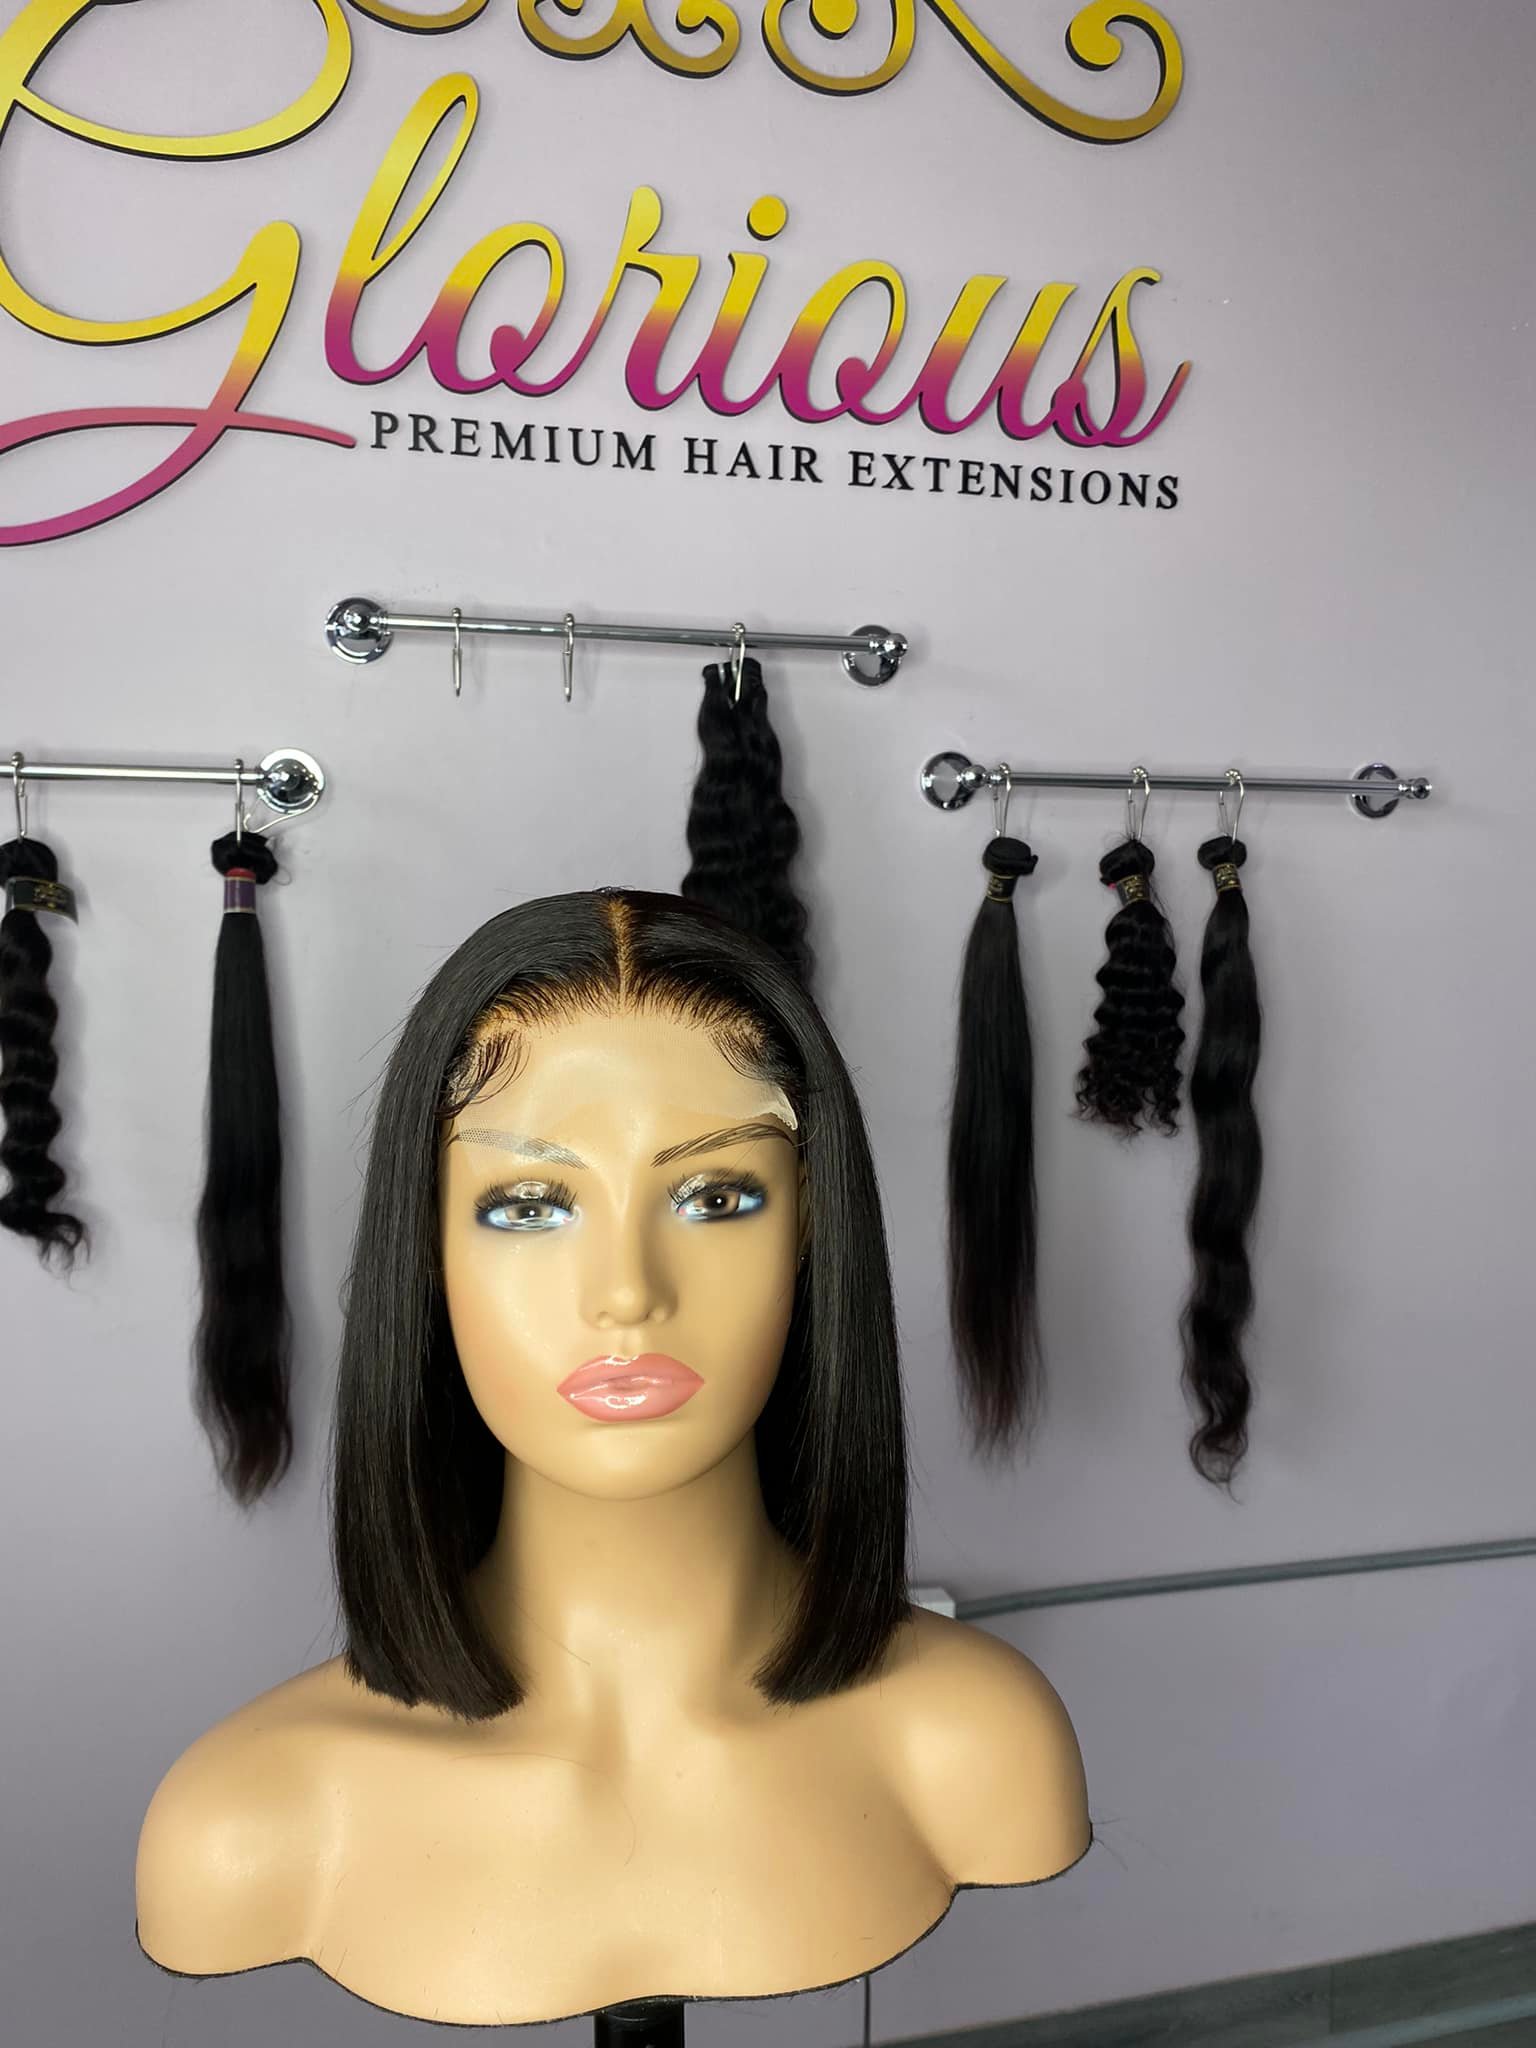 Glorious Remy Hair Boutique 411 Des Plaines Ave, Forest Park Illinois 60130